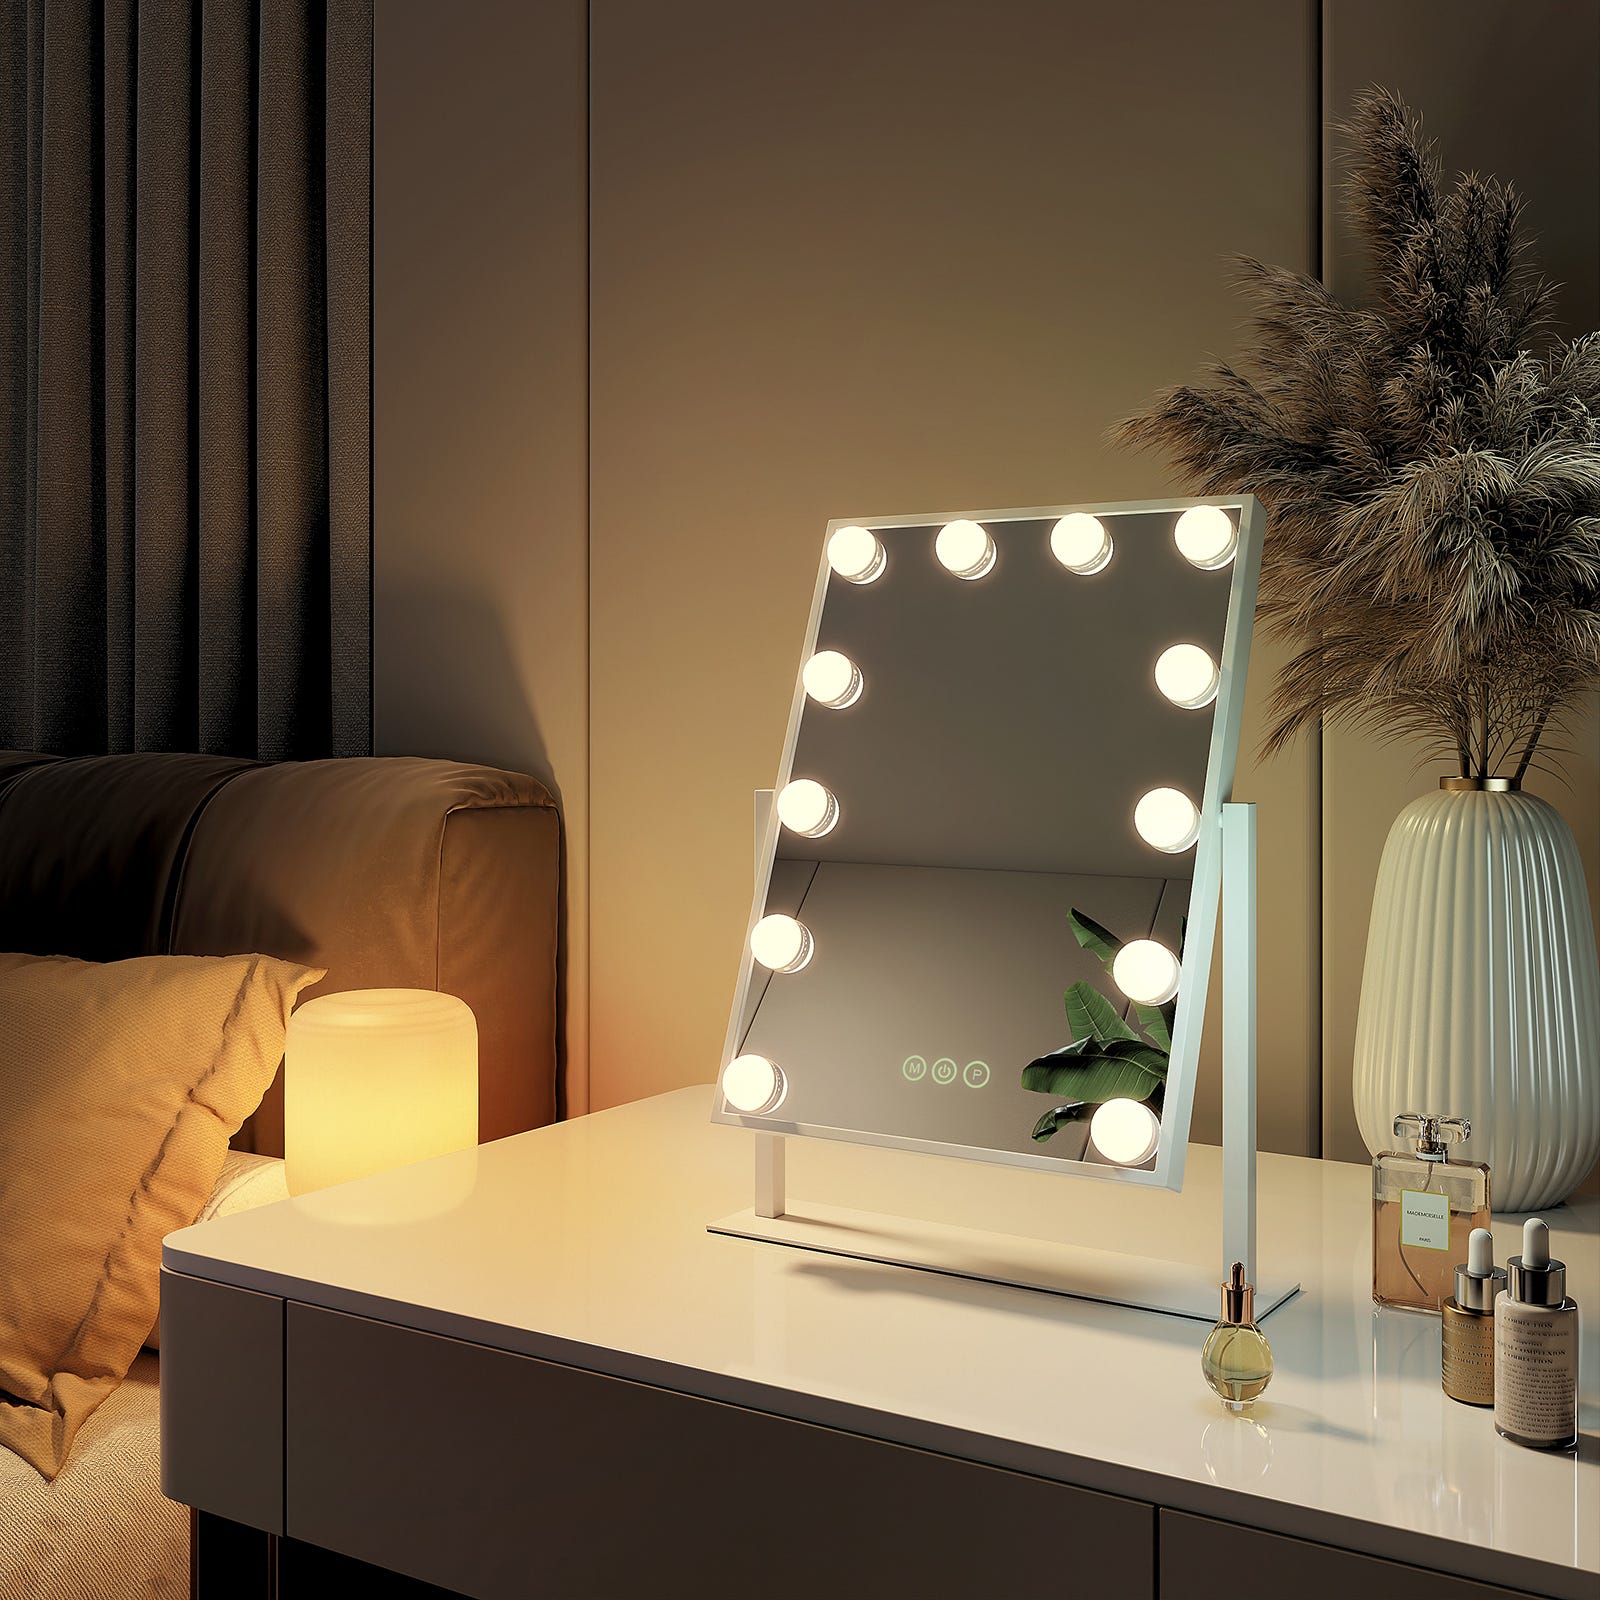 EMKE Hollywood miroir de courtoisie avec lumière, 50x58cm rond blanc, miroir  de coiffeuse pivotant à 360°, avec 3 lumières dimmables